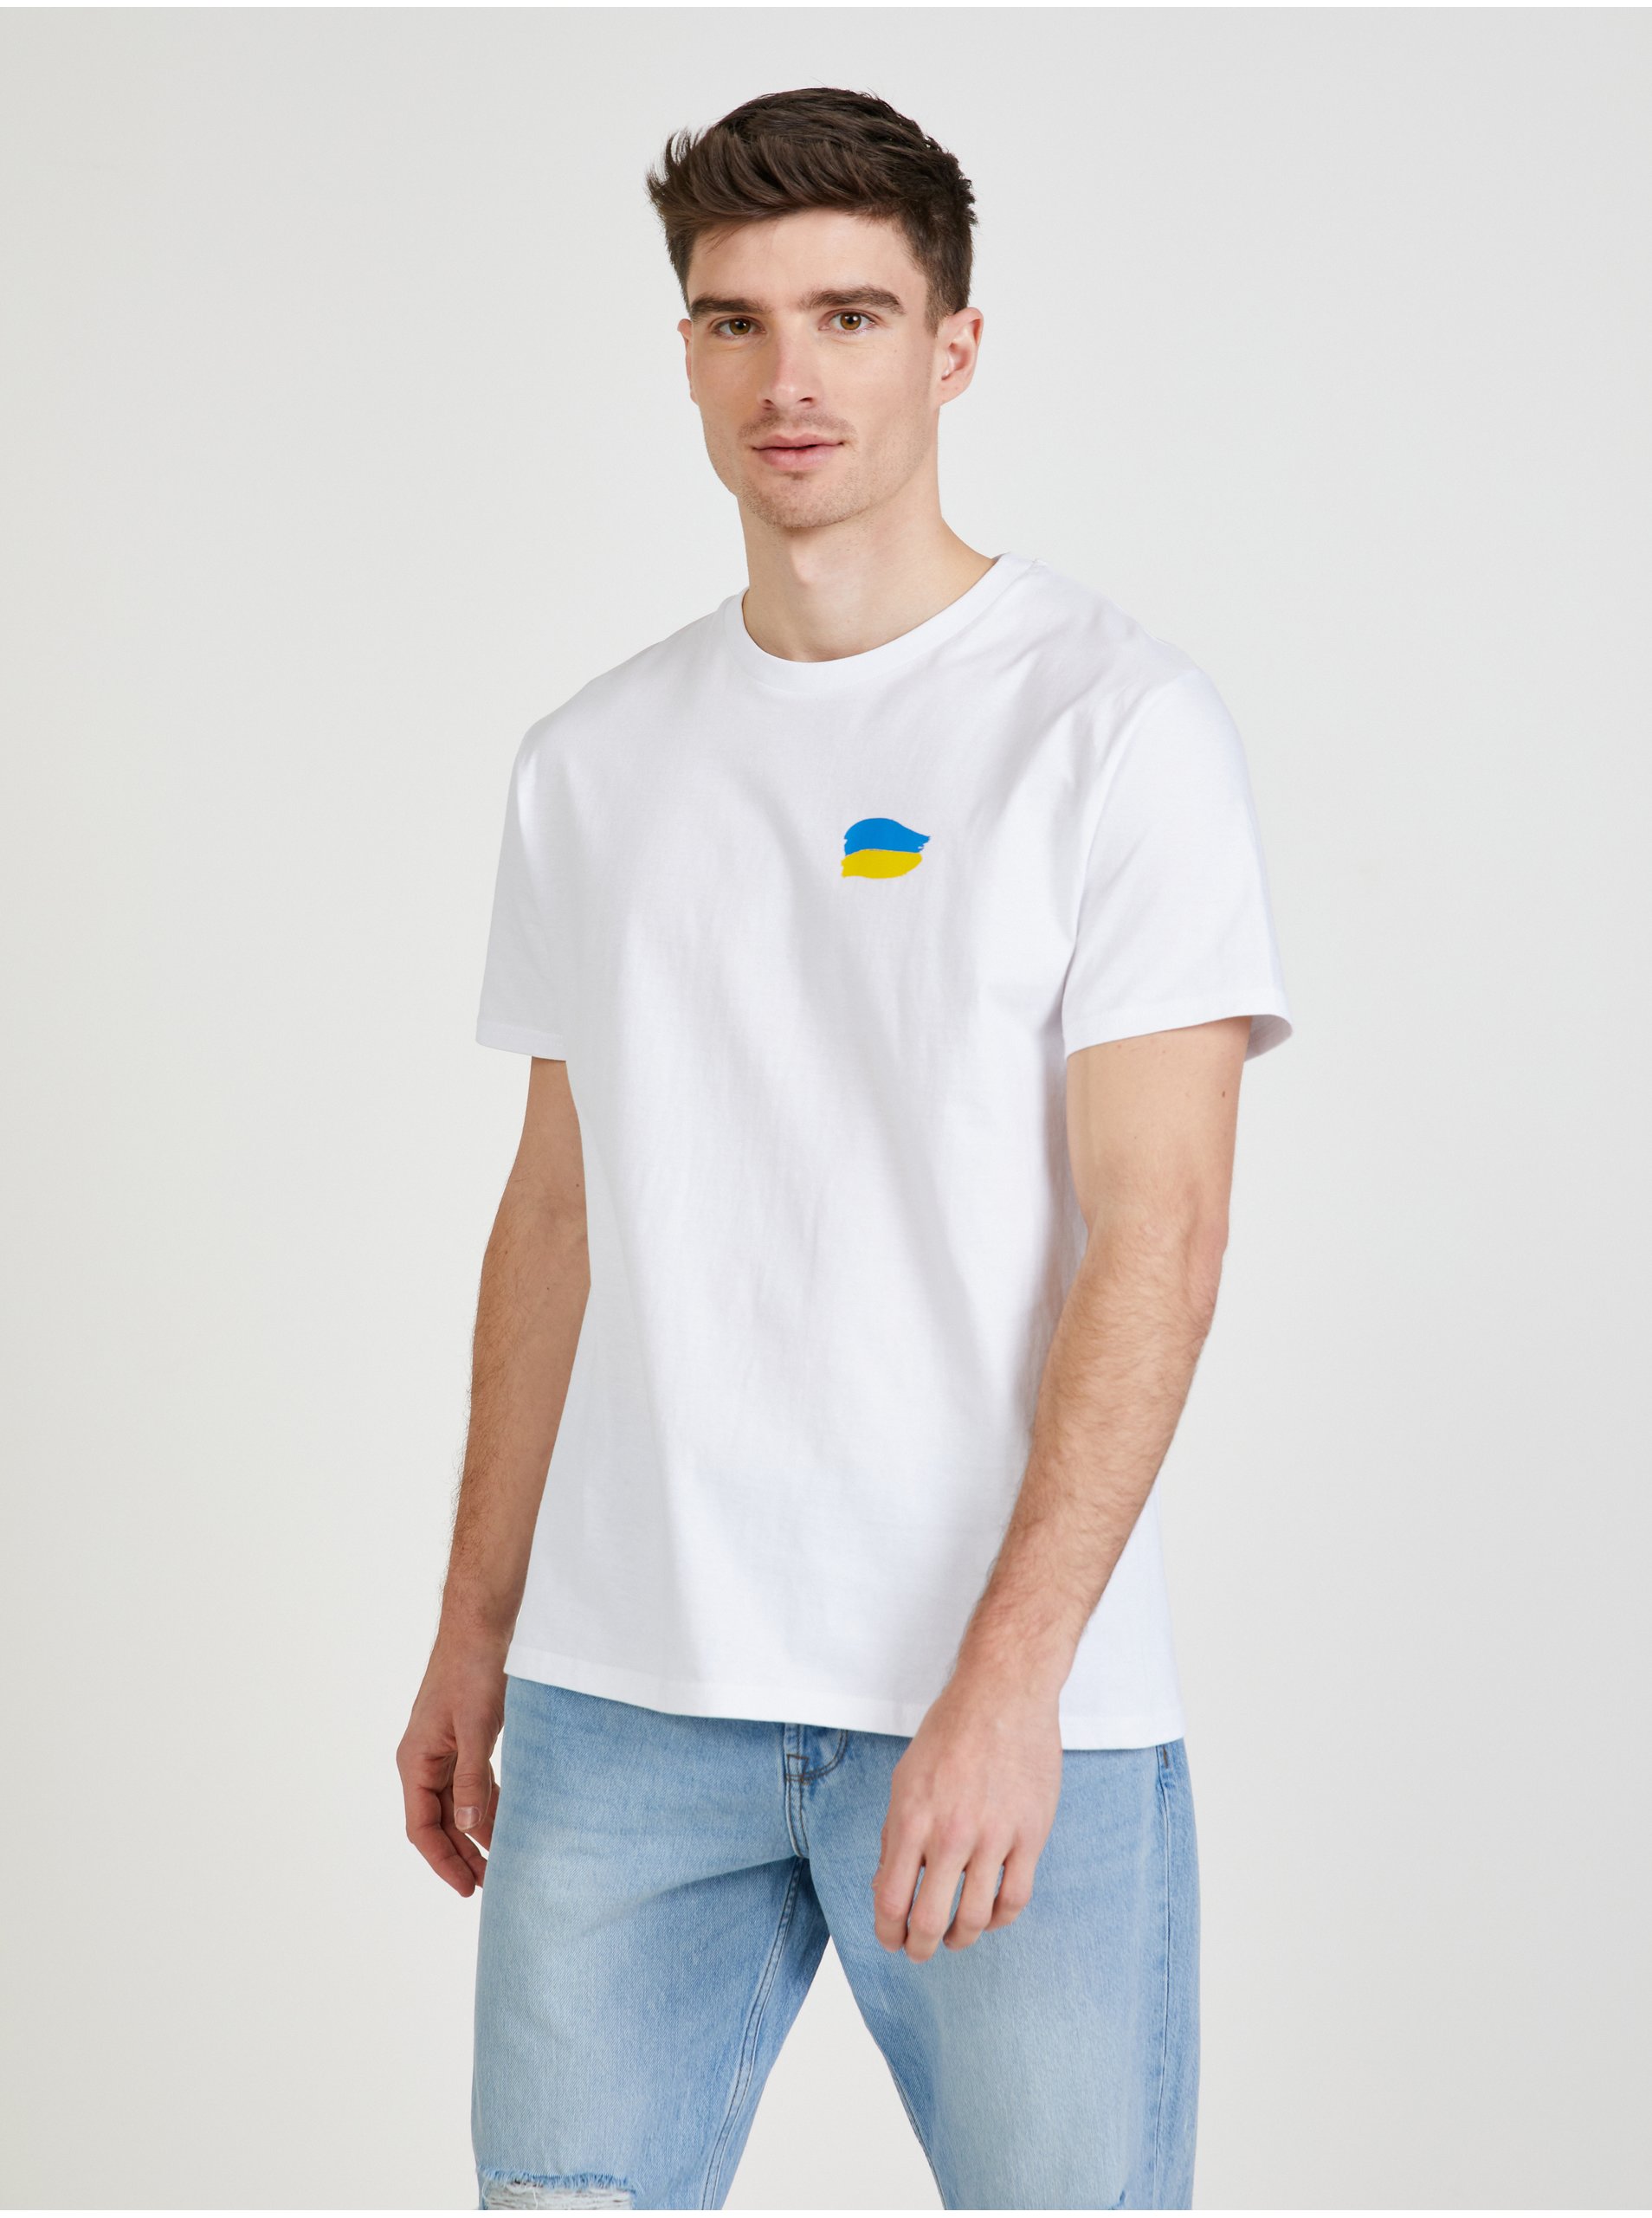 Lacno Biele pánske tričko Netřeba slov z kolekcie DOBRO. pre Ukrajinu